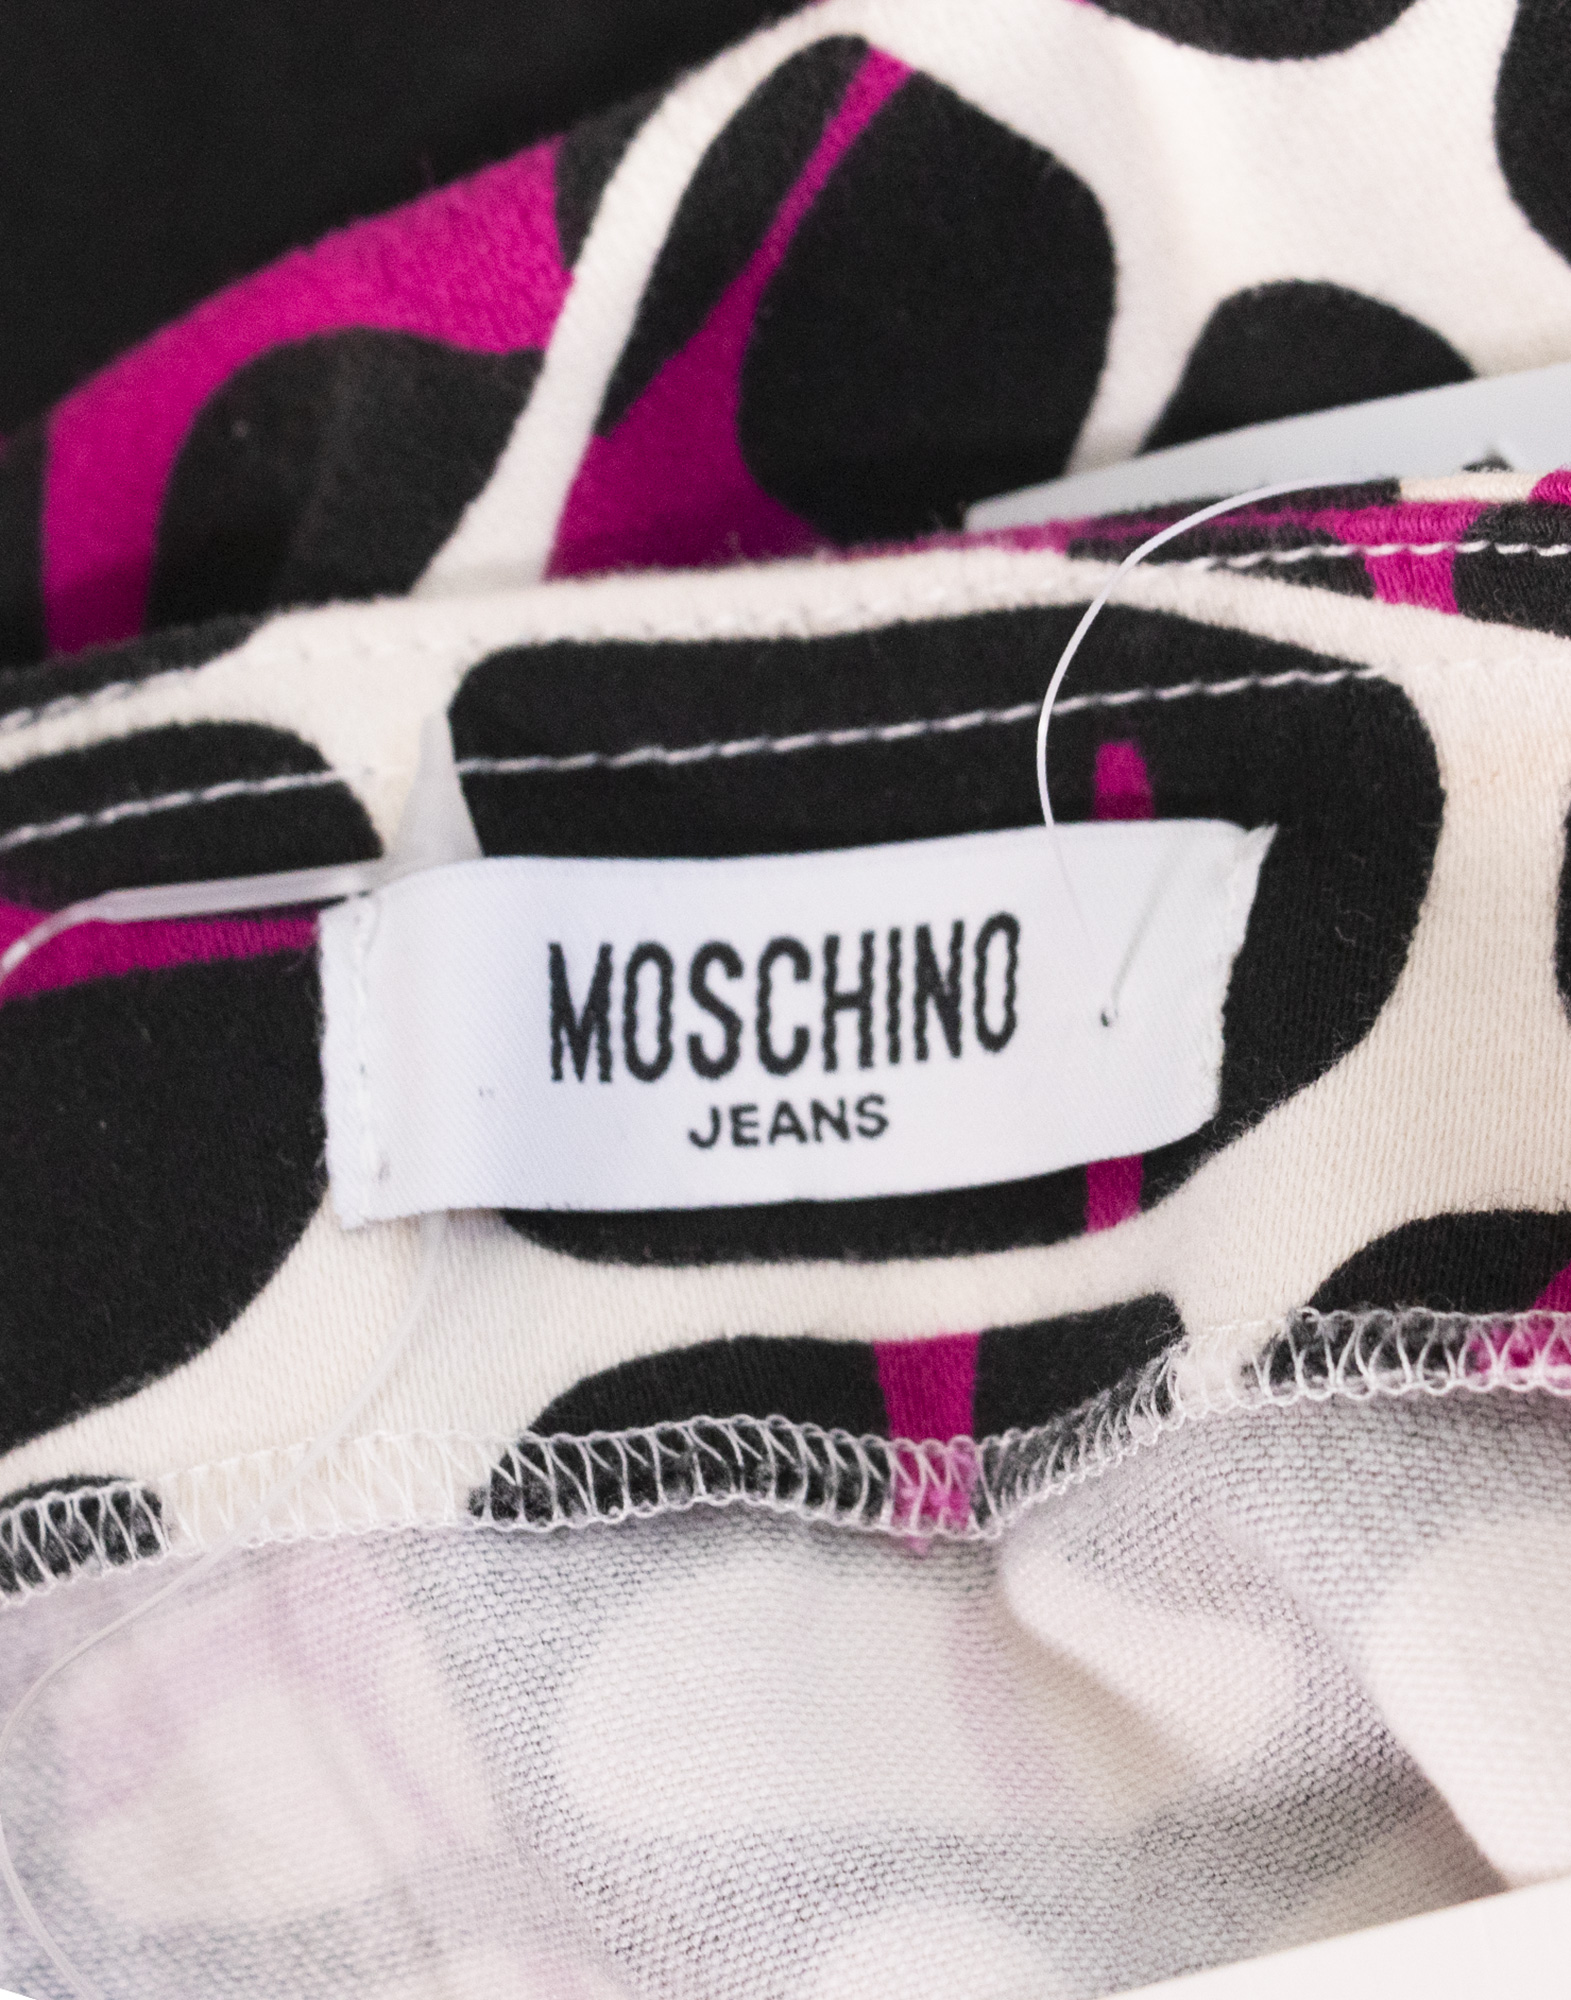 Moschino Jeans - Gonna multicolore in cotone